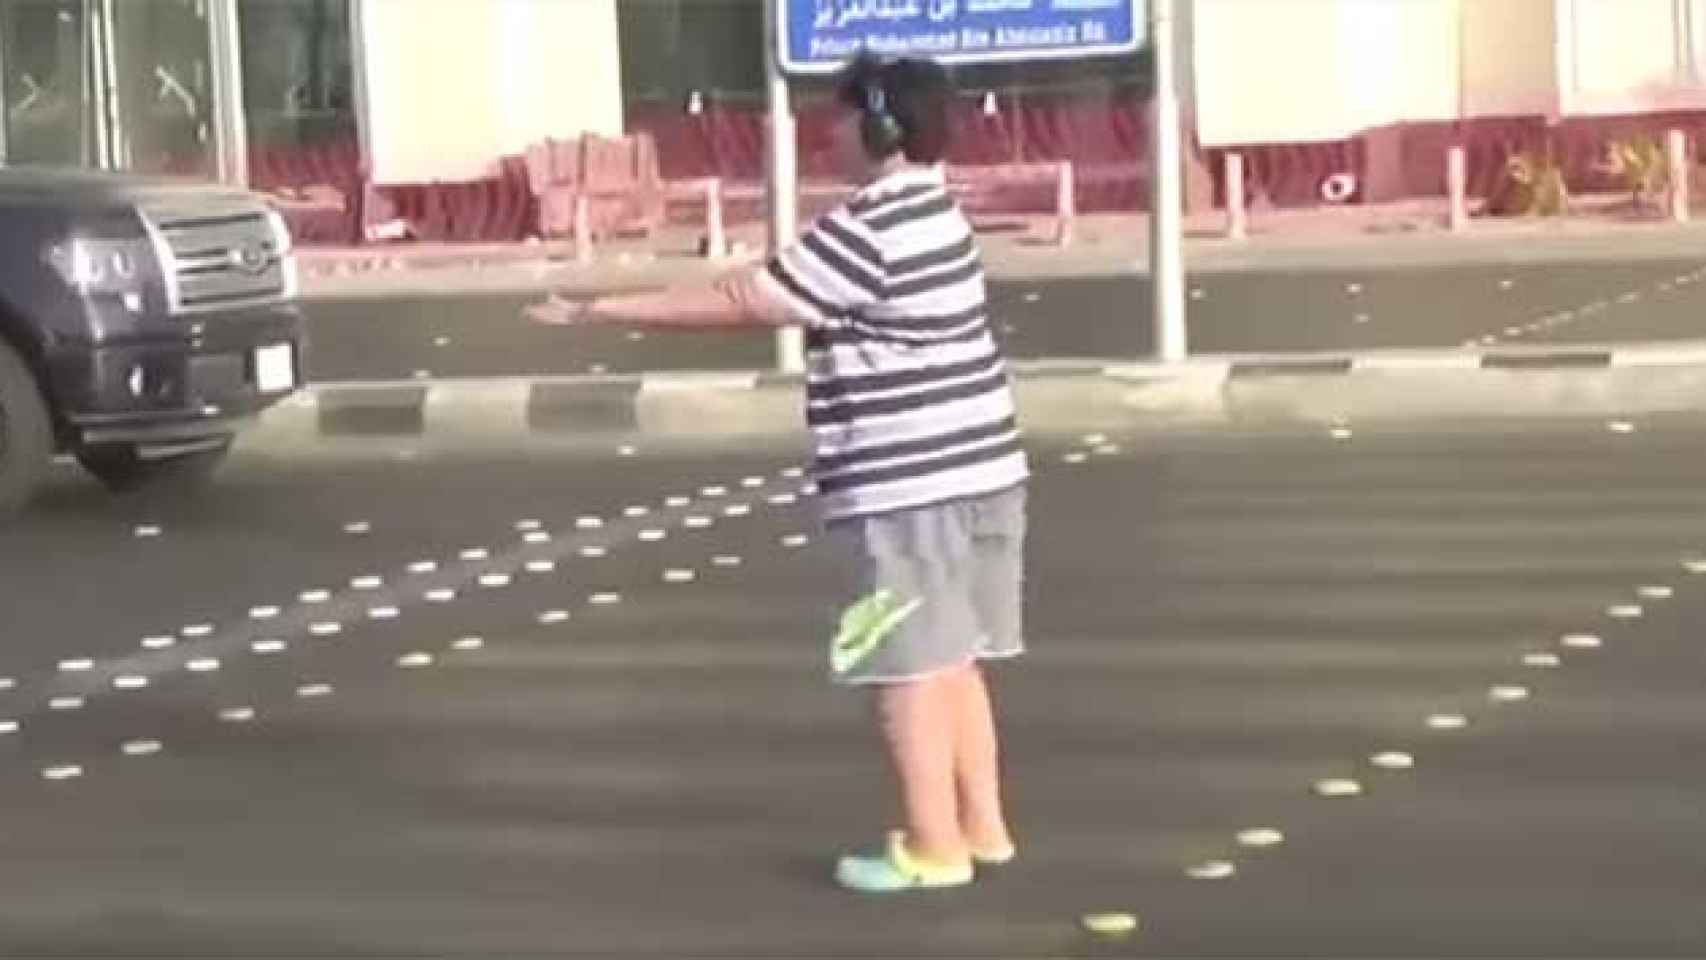 El joven detenido baila la 'Macarena' en la calle / CG